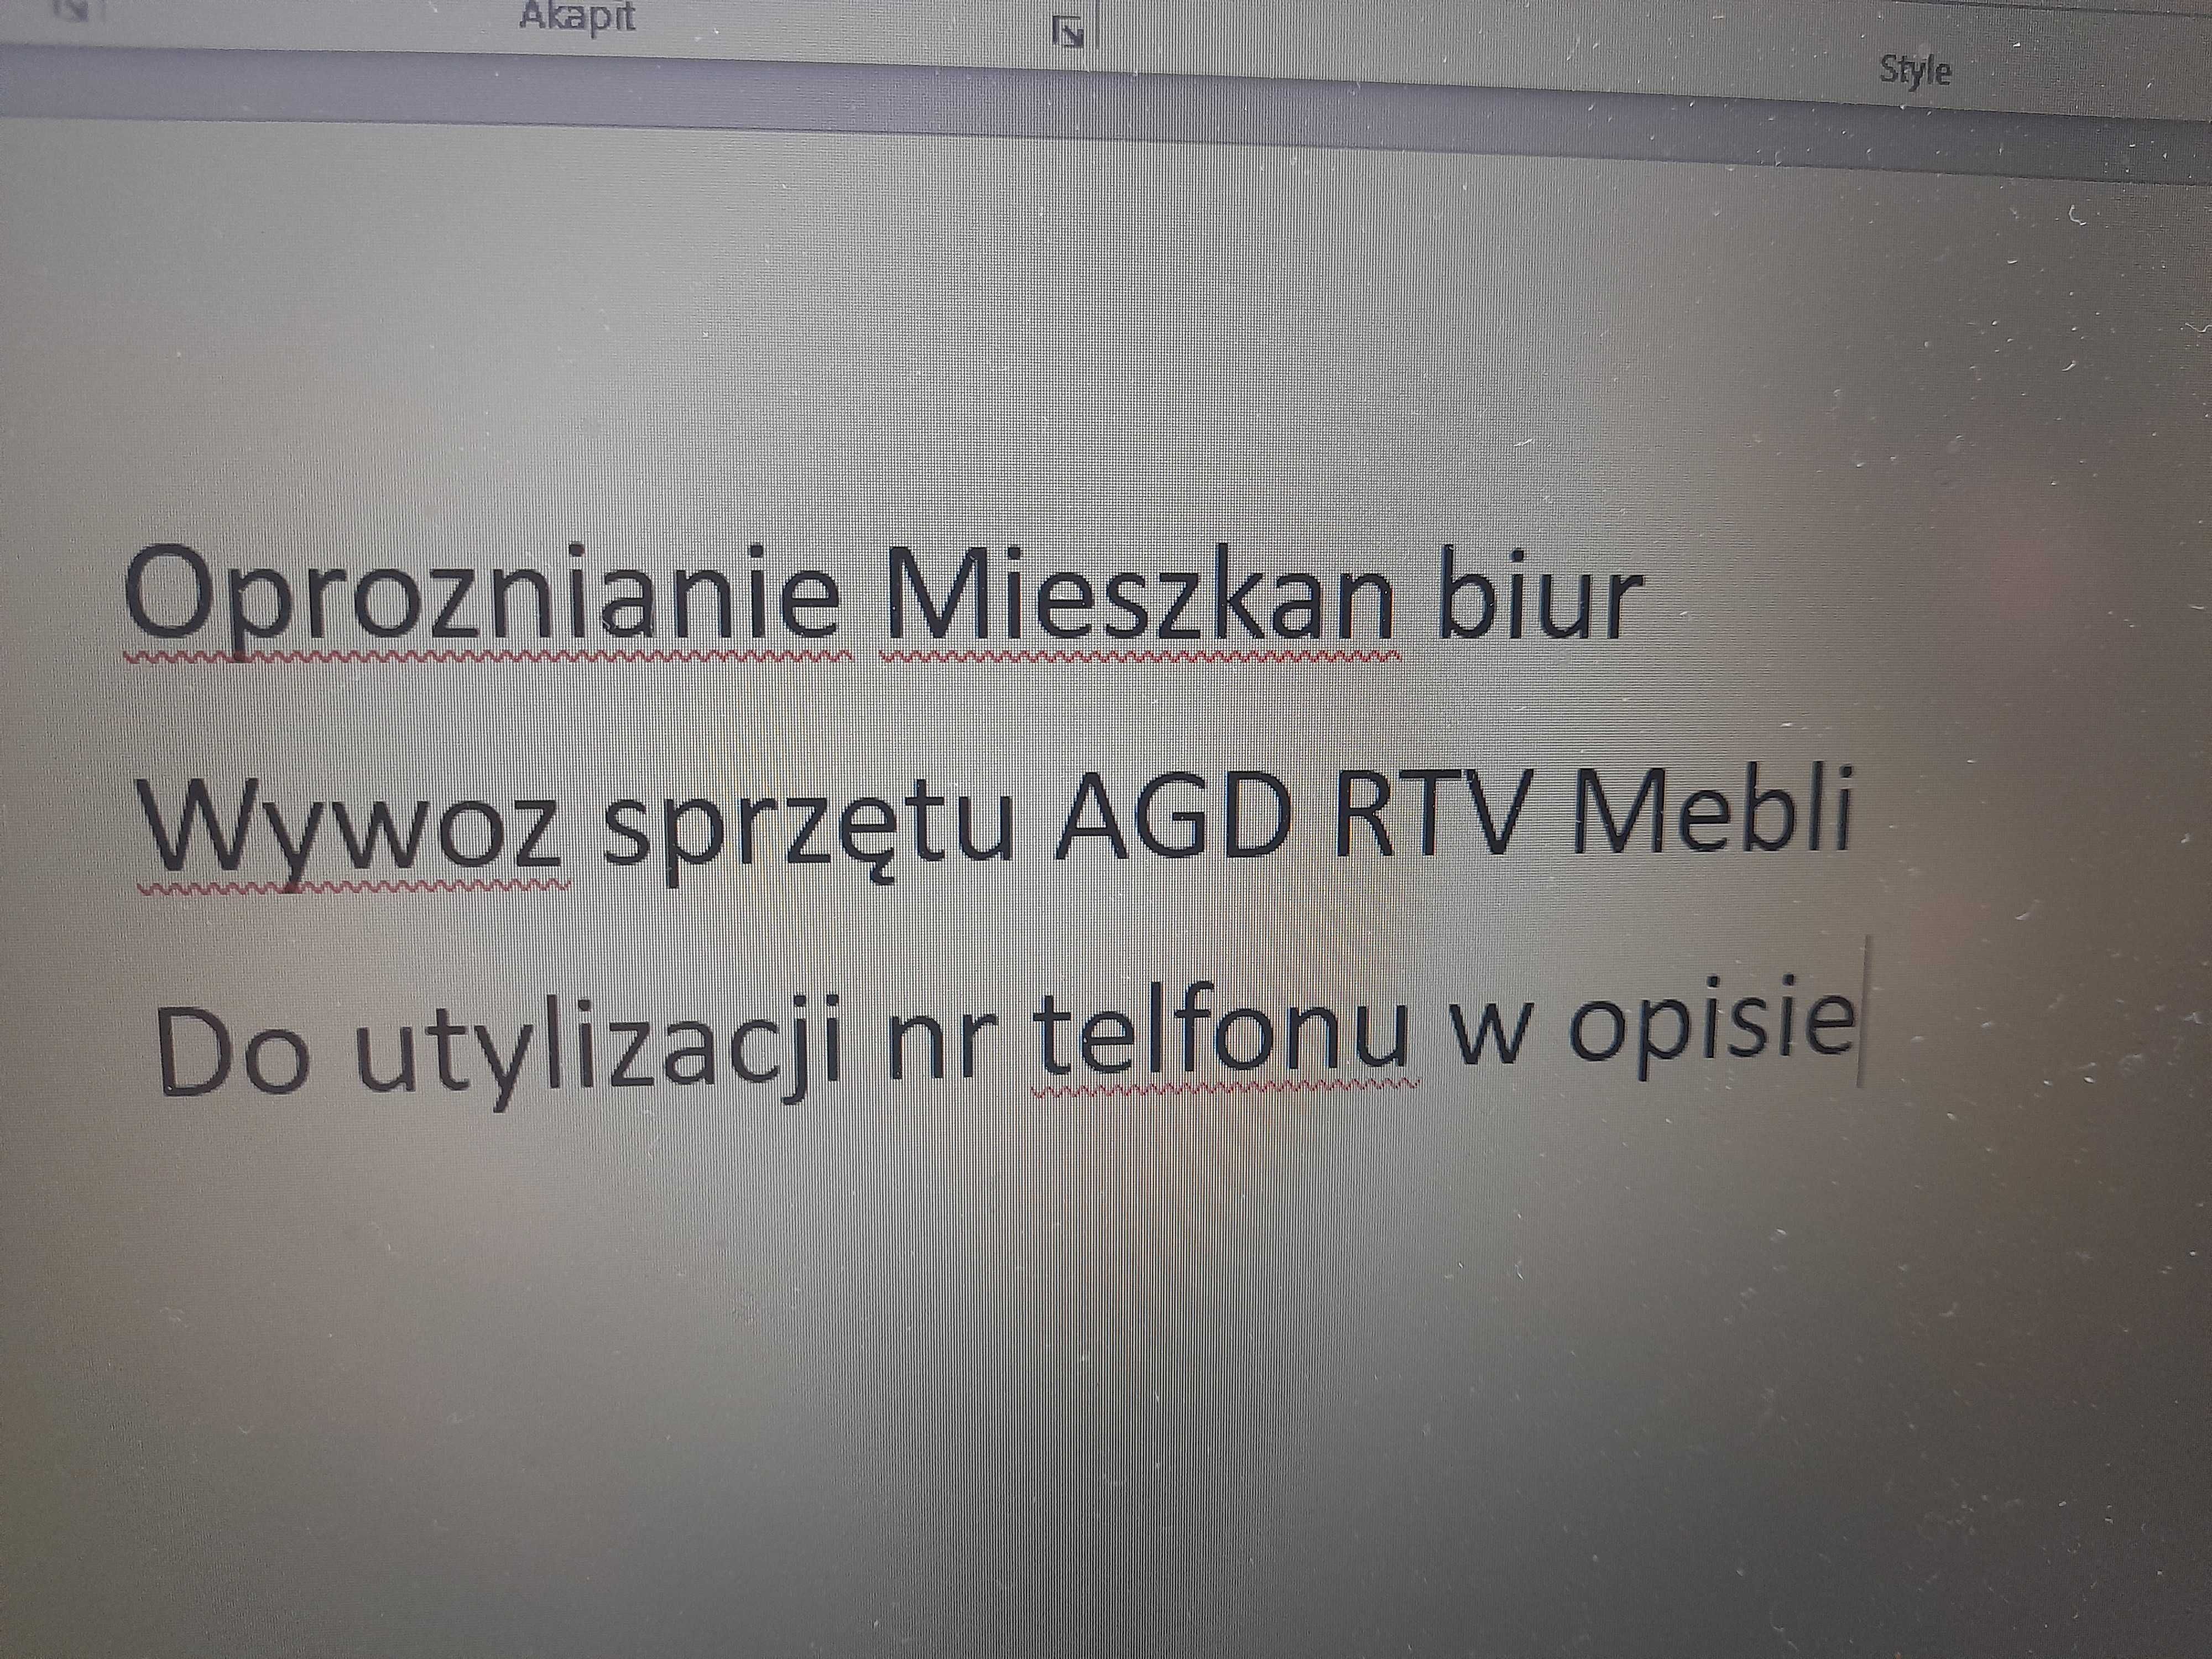 Oproznianie mieszkan BIUR wywoz AGD RTV Mebli utylizacjia Bytom